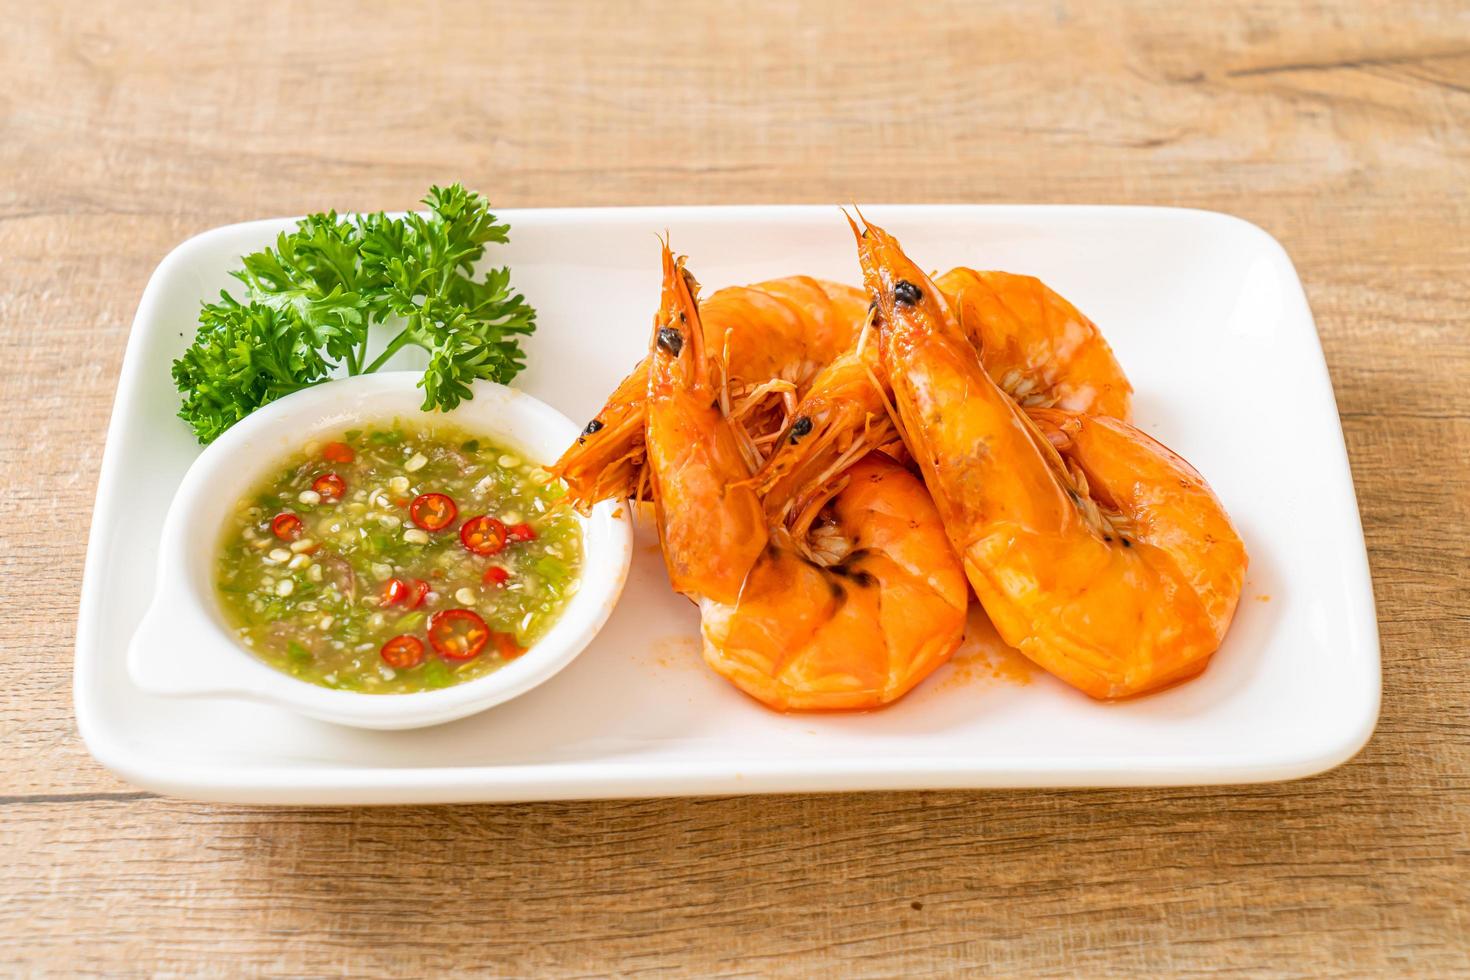 crevettes ou crevettes salées au four avec sauce épicée aux fruits de mer - style fruits de mer photo